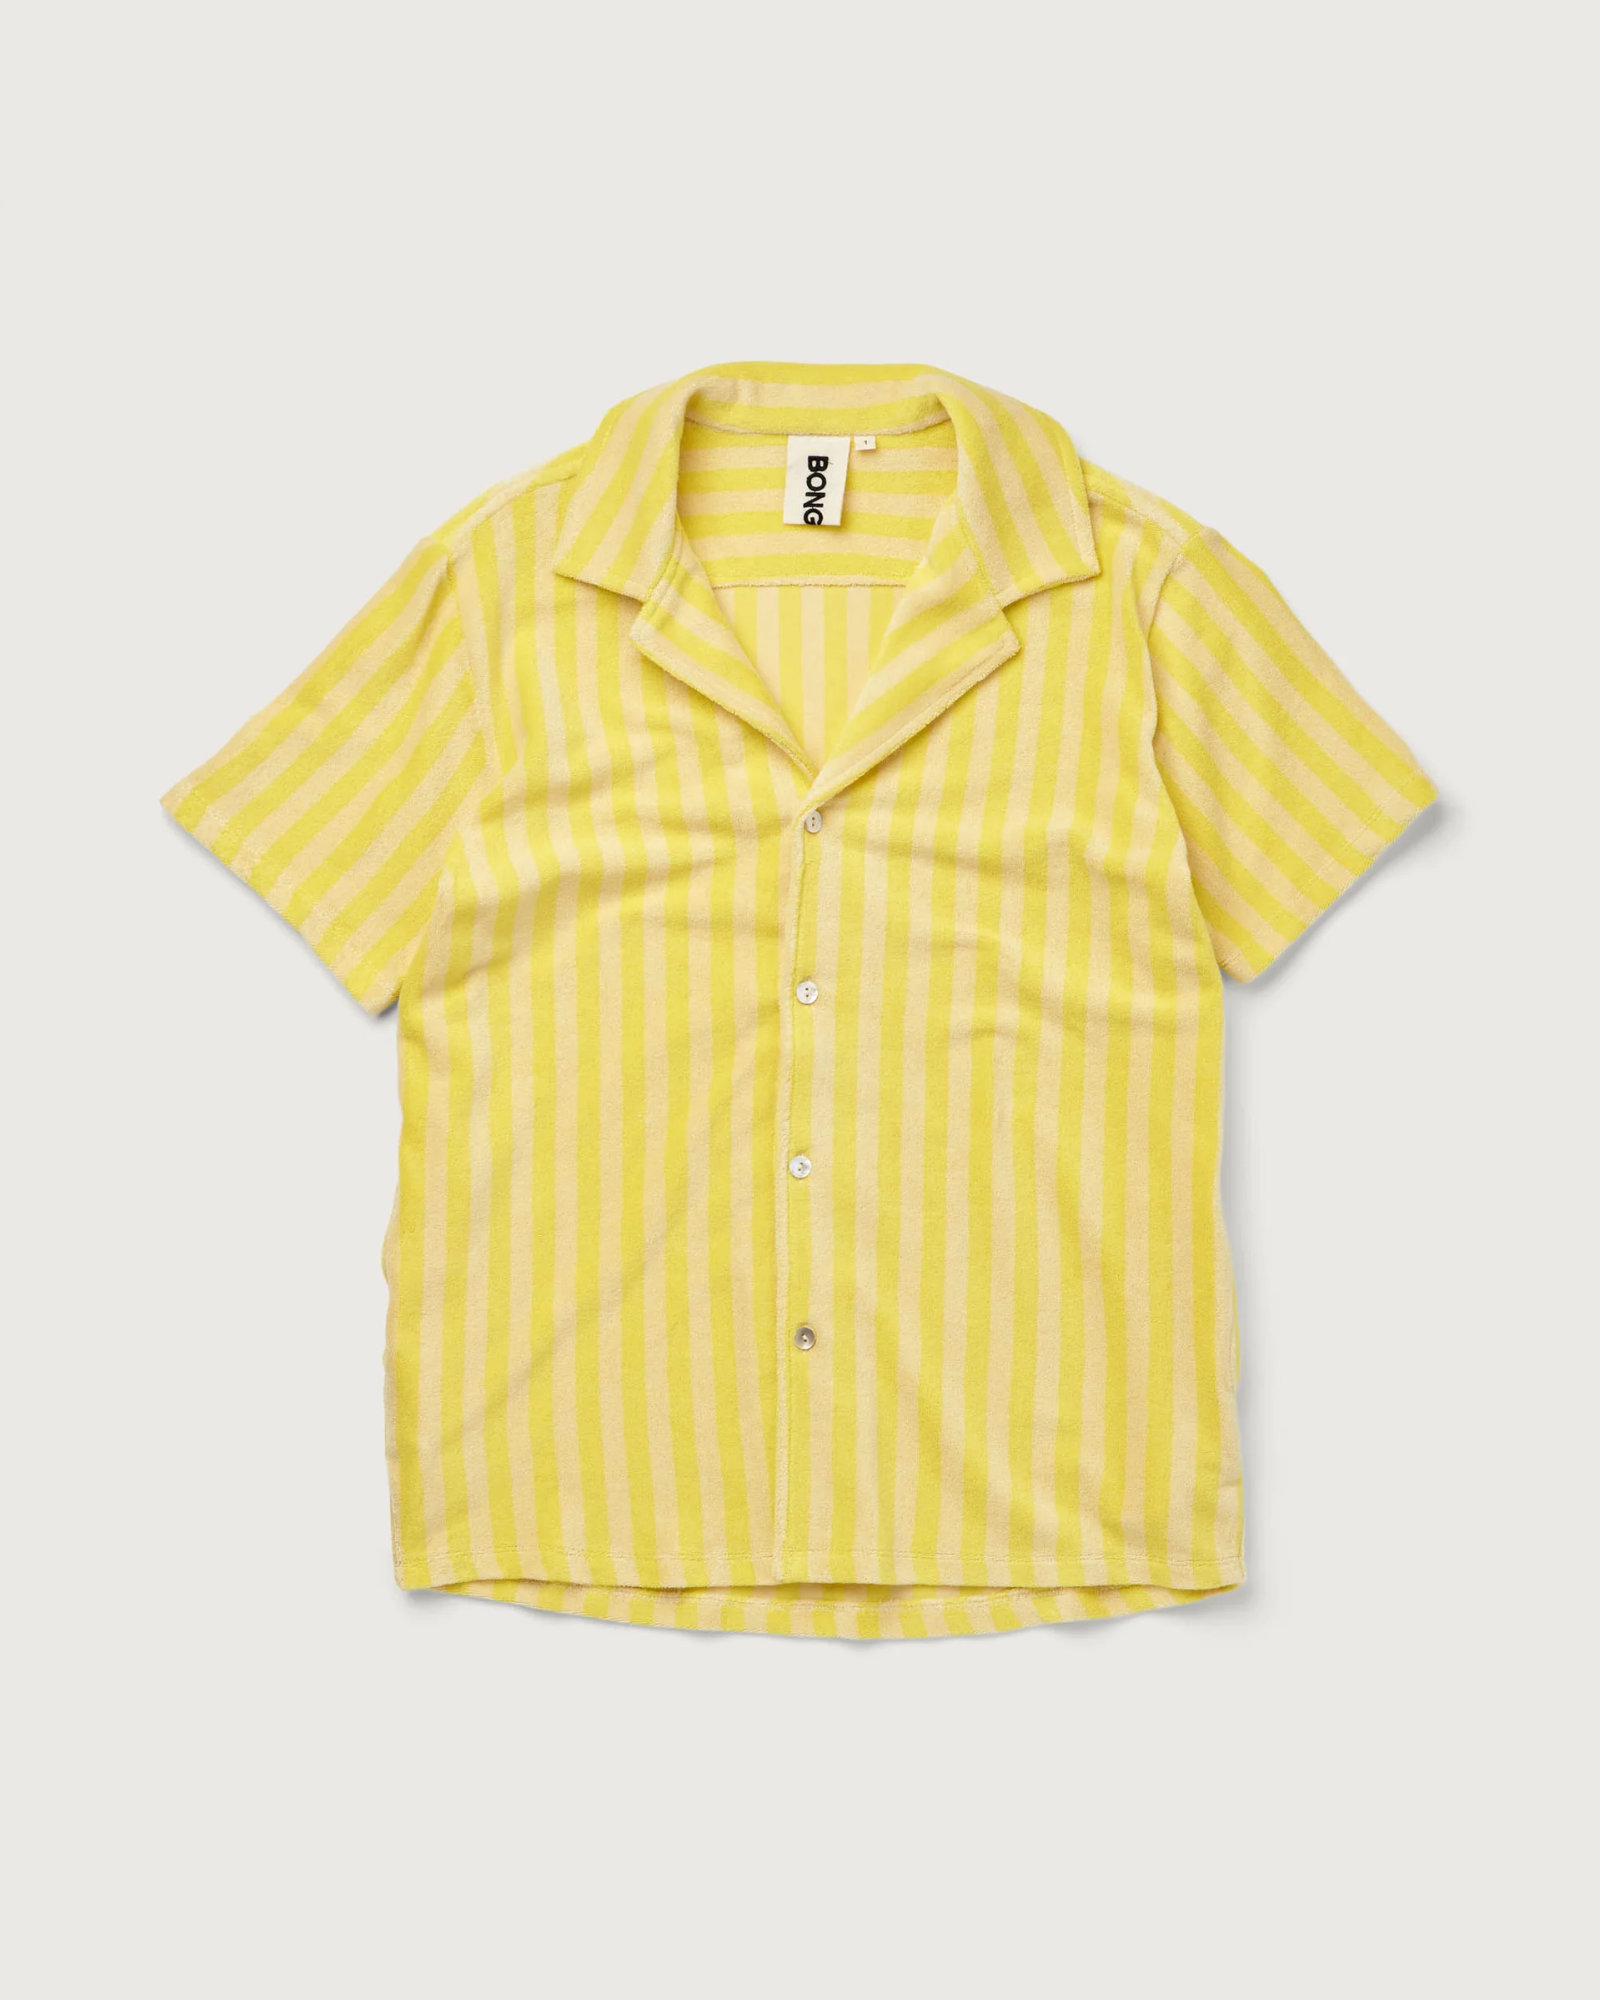 Bongusta - T-Shirt NARAM Pristine & Neon yellow - size 2 (LA) - Pristine & Neon yellow